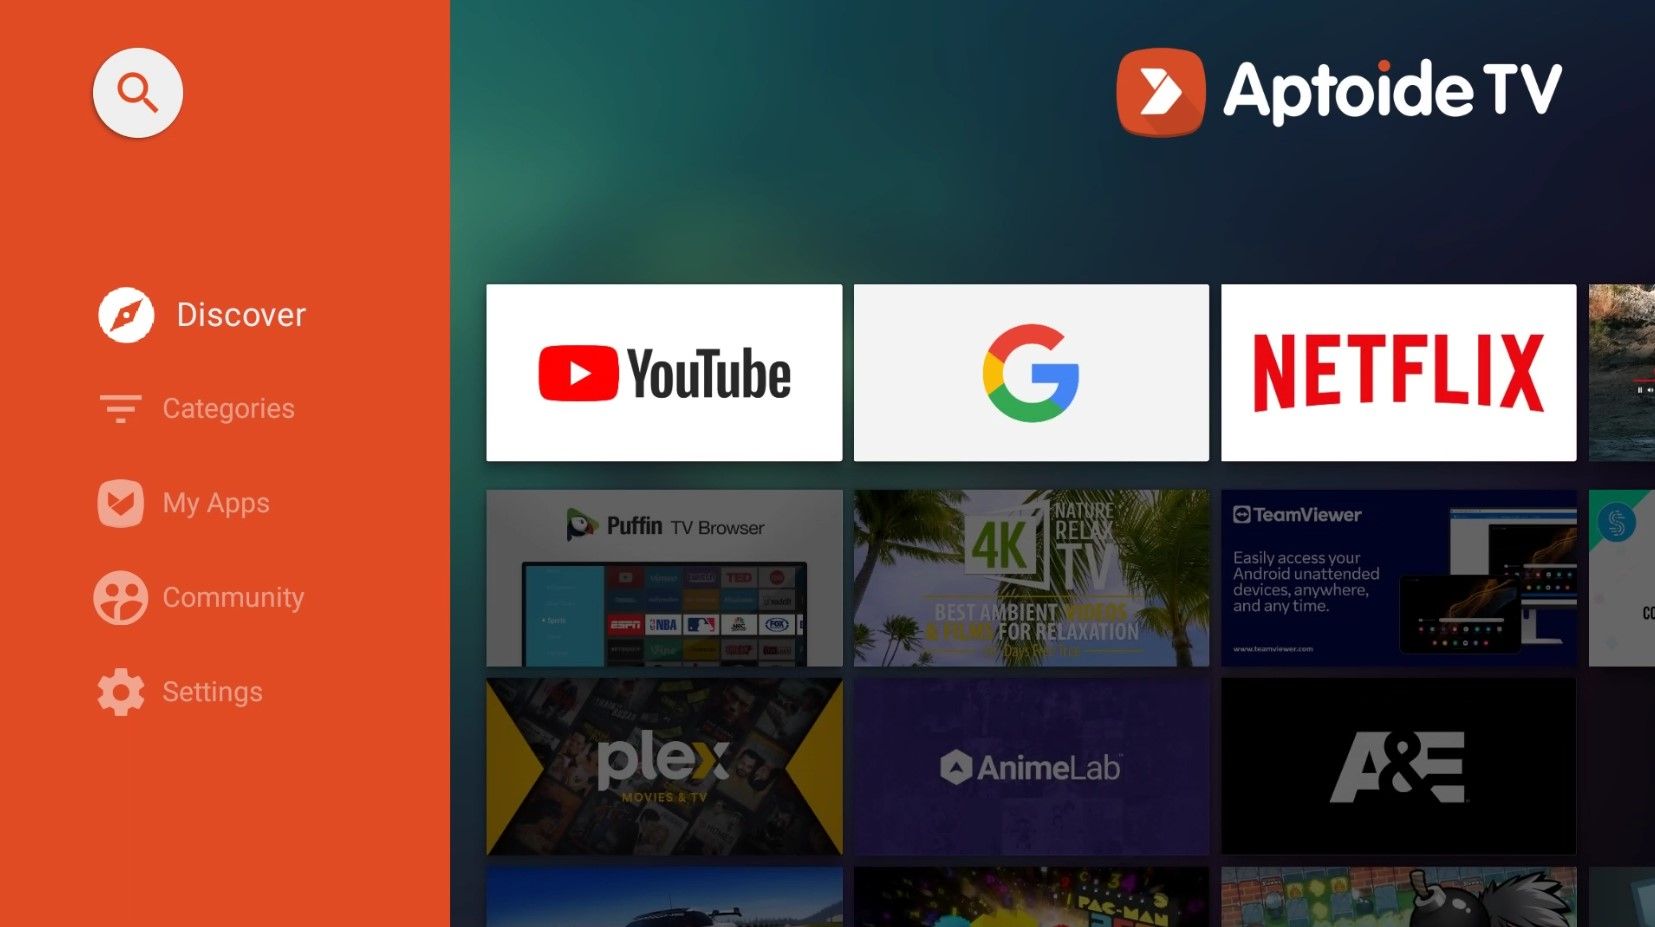 Aptoide on Android TV